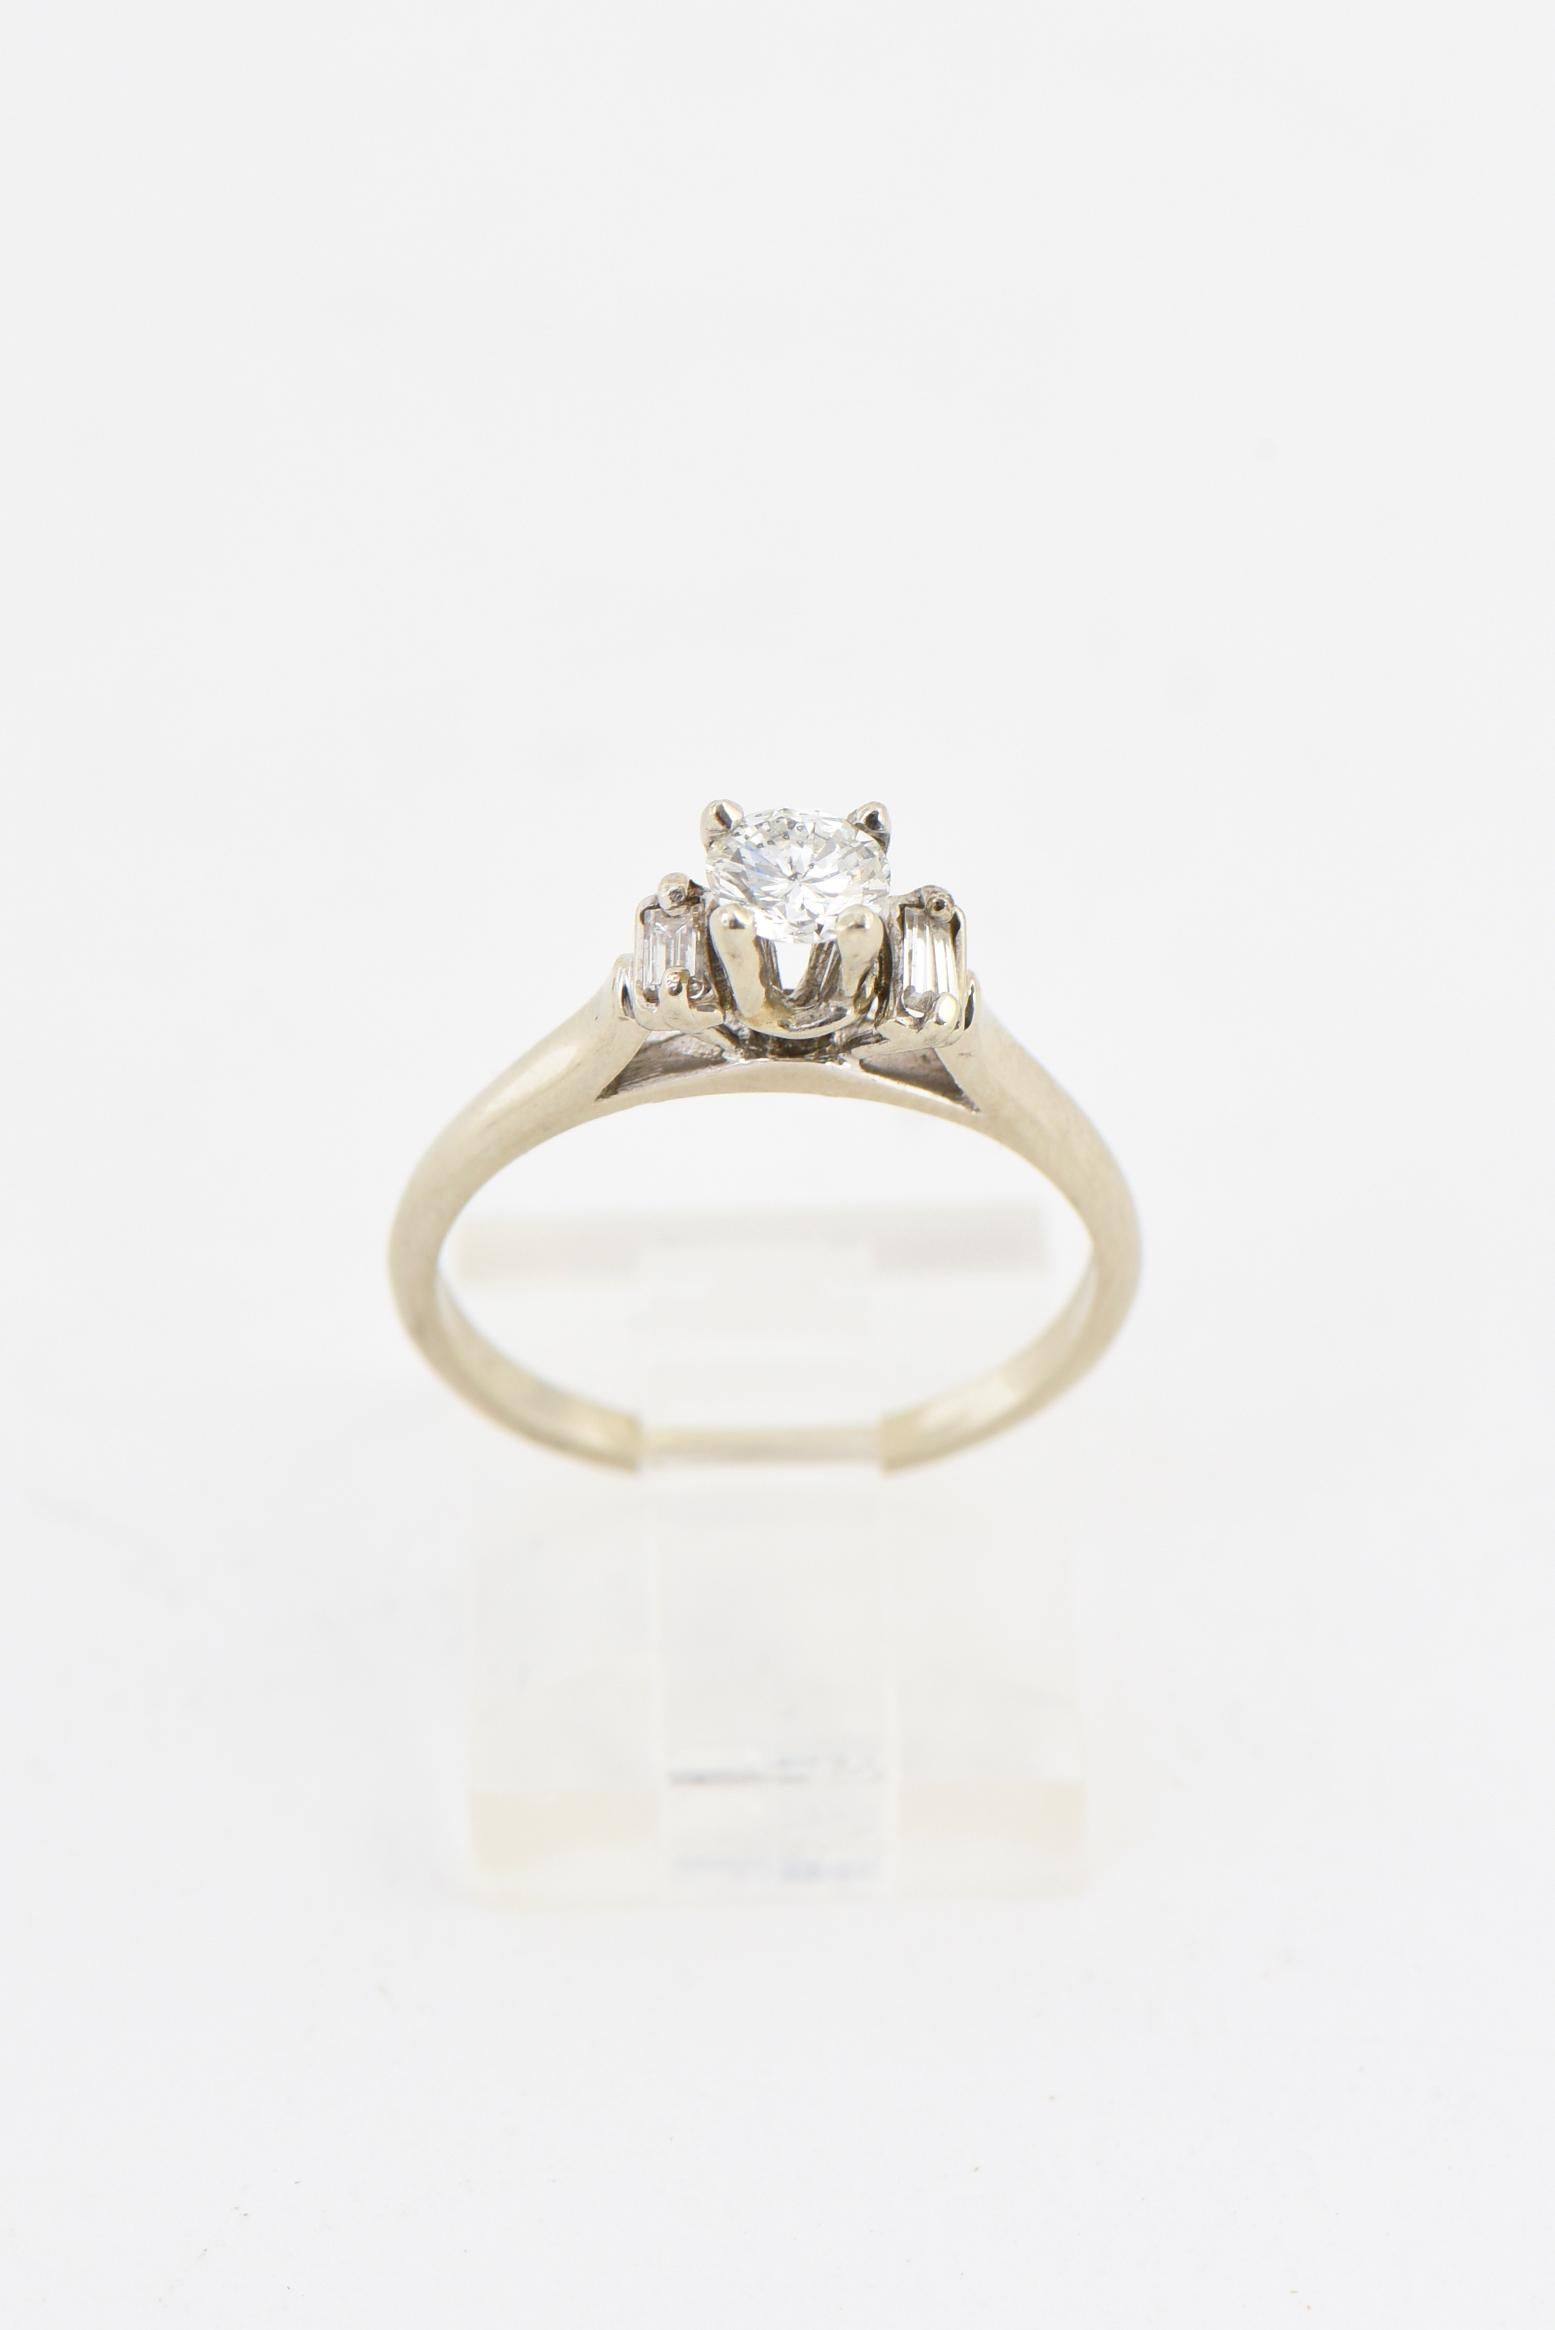 Élégante bague en or blanc 14K présentant un diamant de 0,35 carat monté dans une monture traditionnelle à quatre griffes, flanqué d'un diamant taille baguette de chaque côté. Diamant central, couleur H-I - SI. Usure due à l'âge. Taille US : 6.25 ;